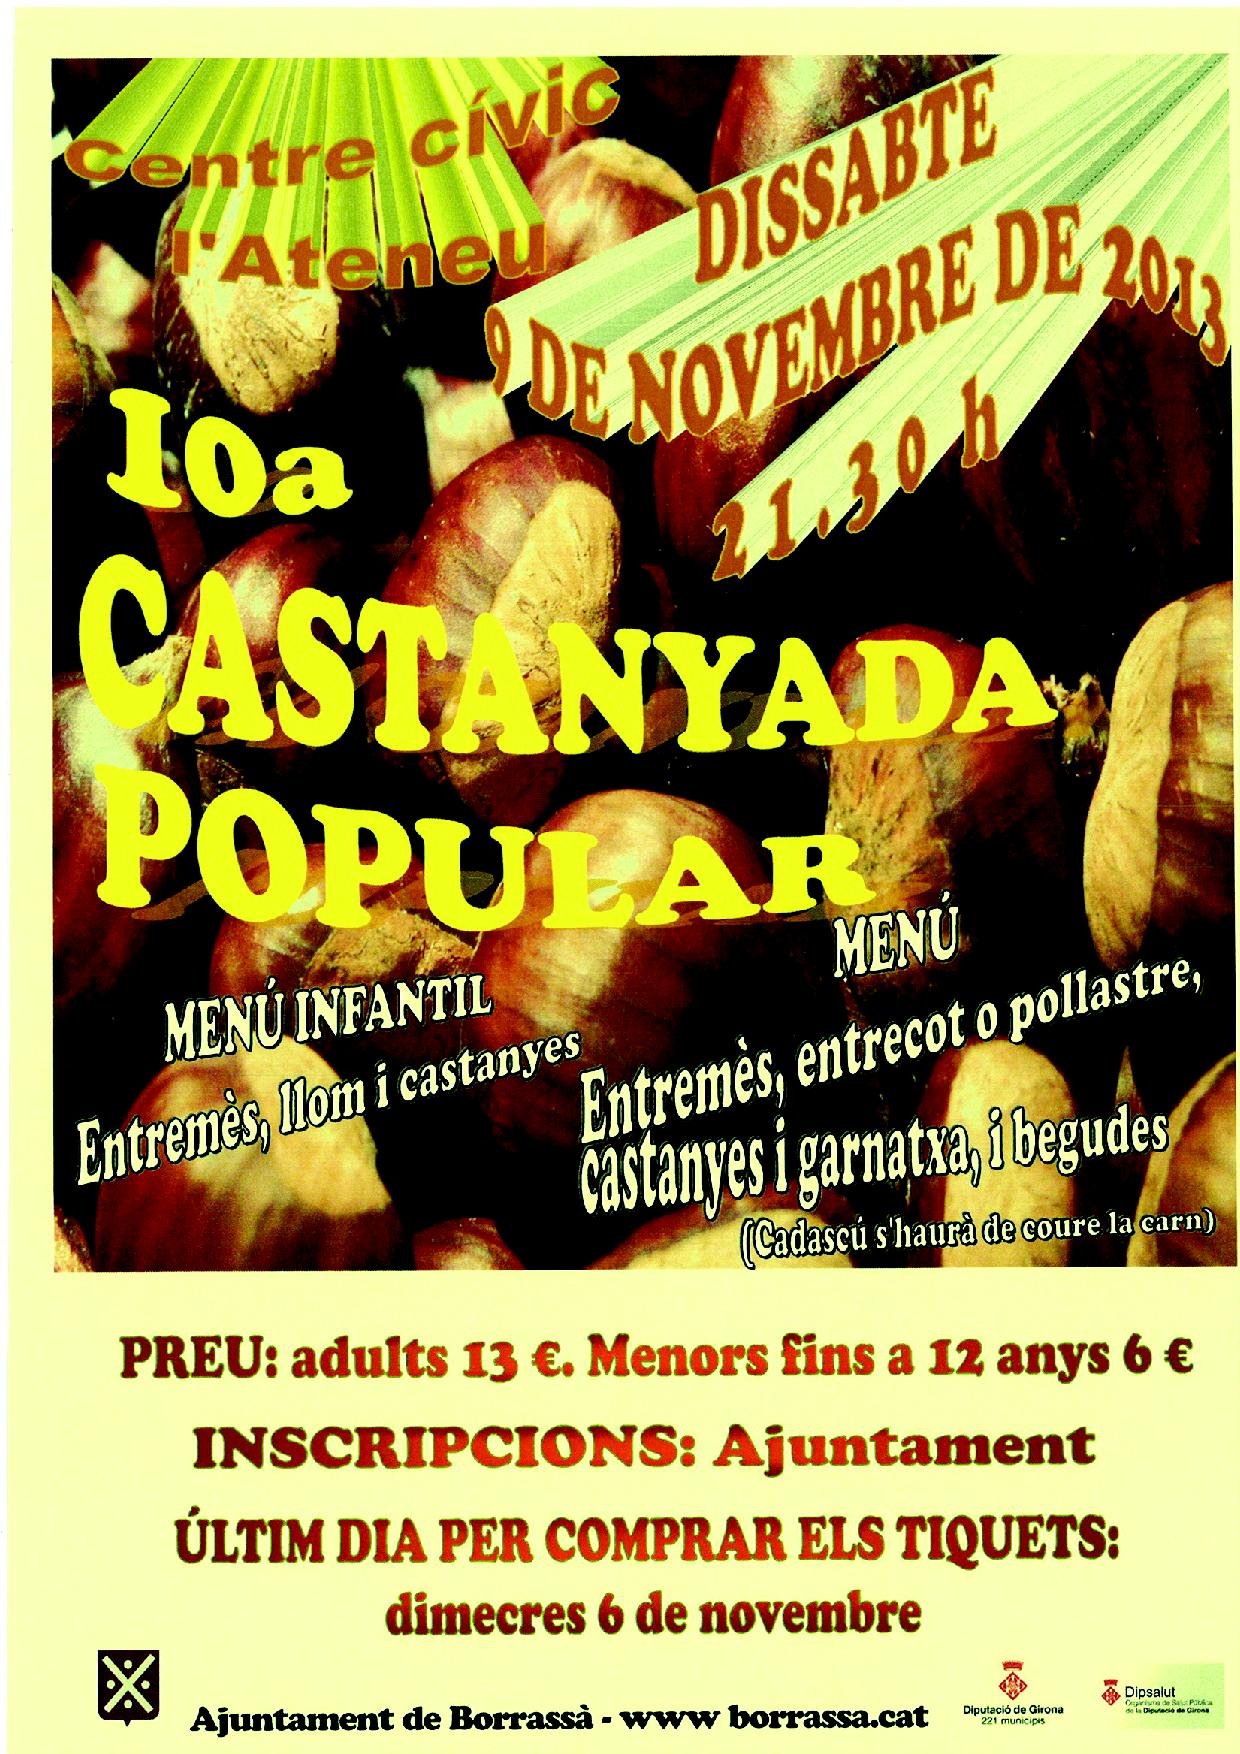 La 10a Castanyada popular se celebrarà el proper dissabte 9 de novembre, a l'Ateneu, a partir de 2/4 de 10 de la nit.